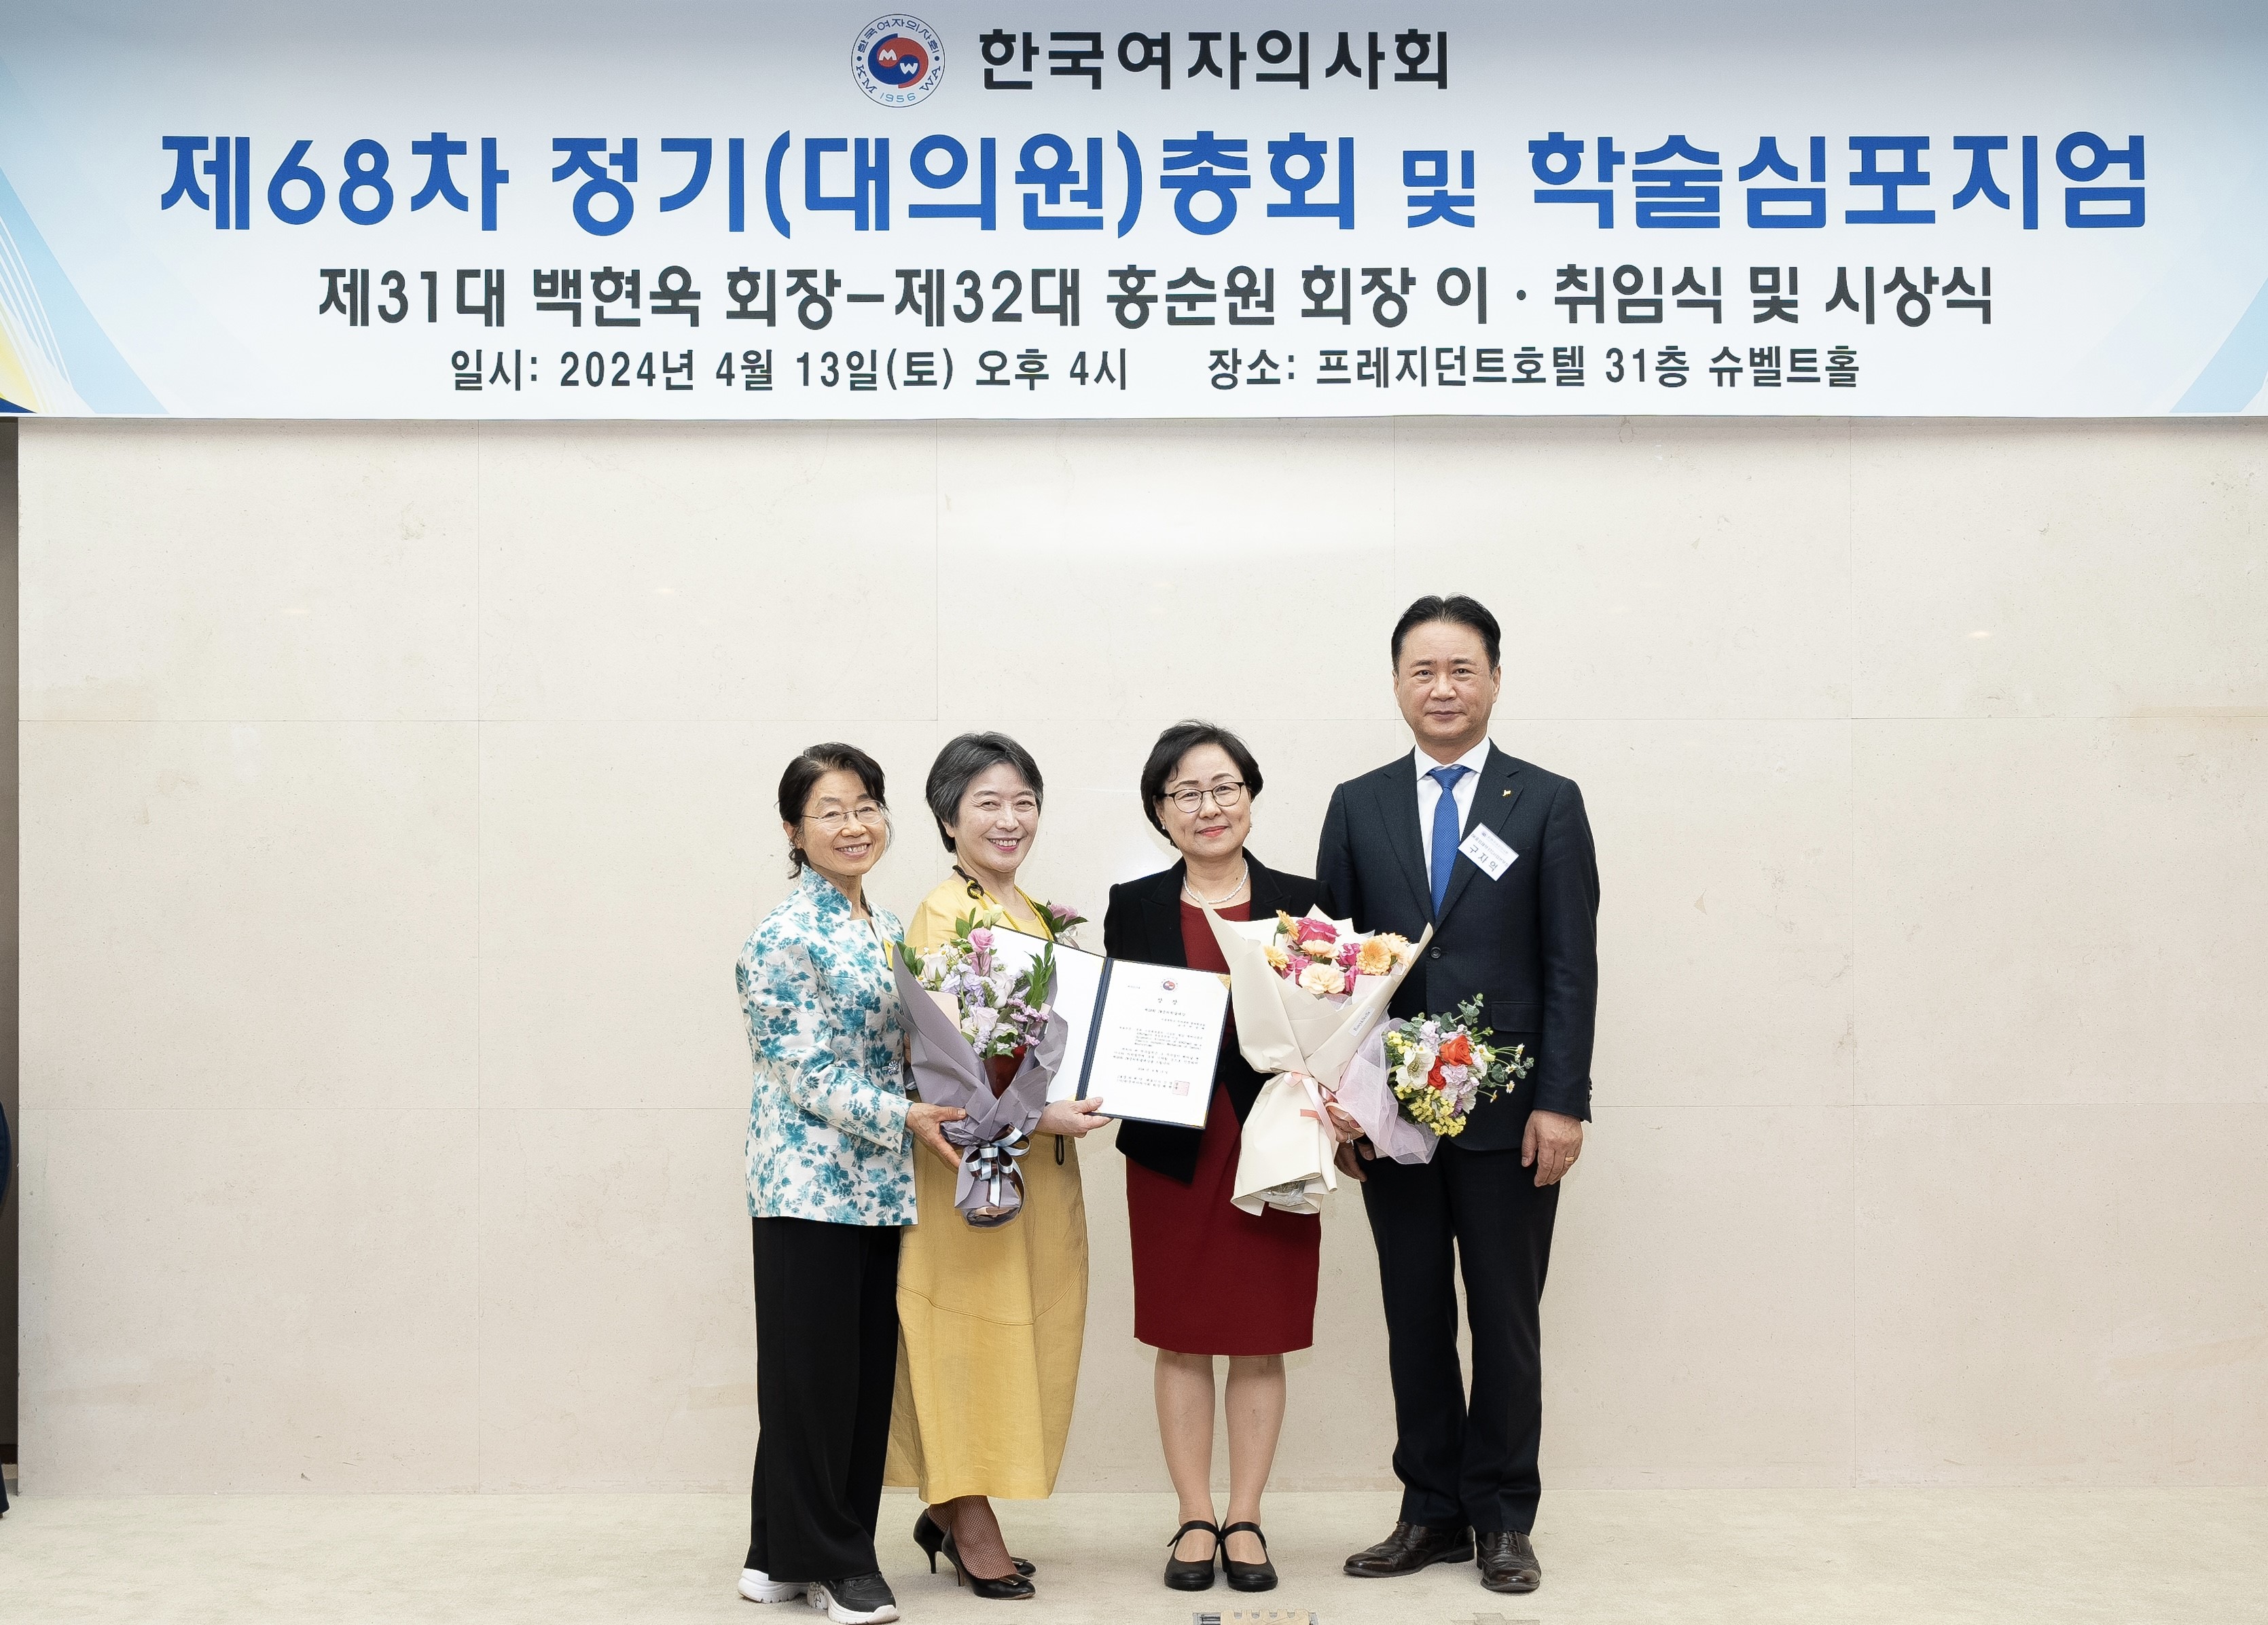 서울대병원 박성혜 교수(오른쪽에서 두 번째)가 제68차 한국여자의사회 정기총회 및 학술심포지엄에서 ‘JW 중외제약 학술 대상’을 수상했다.